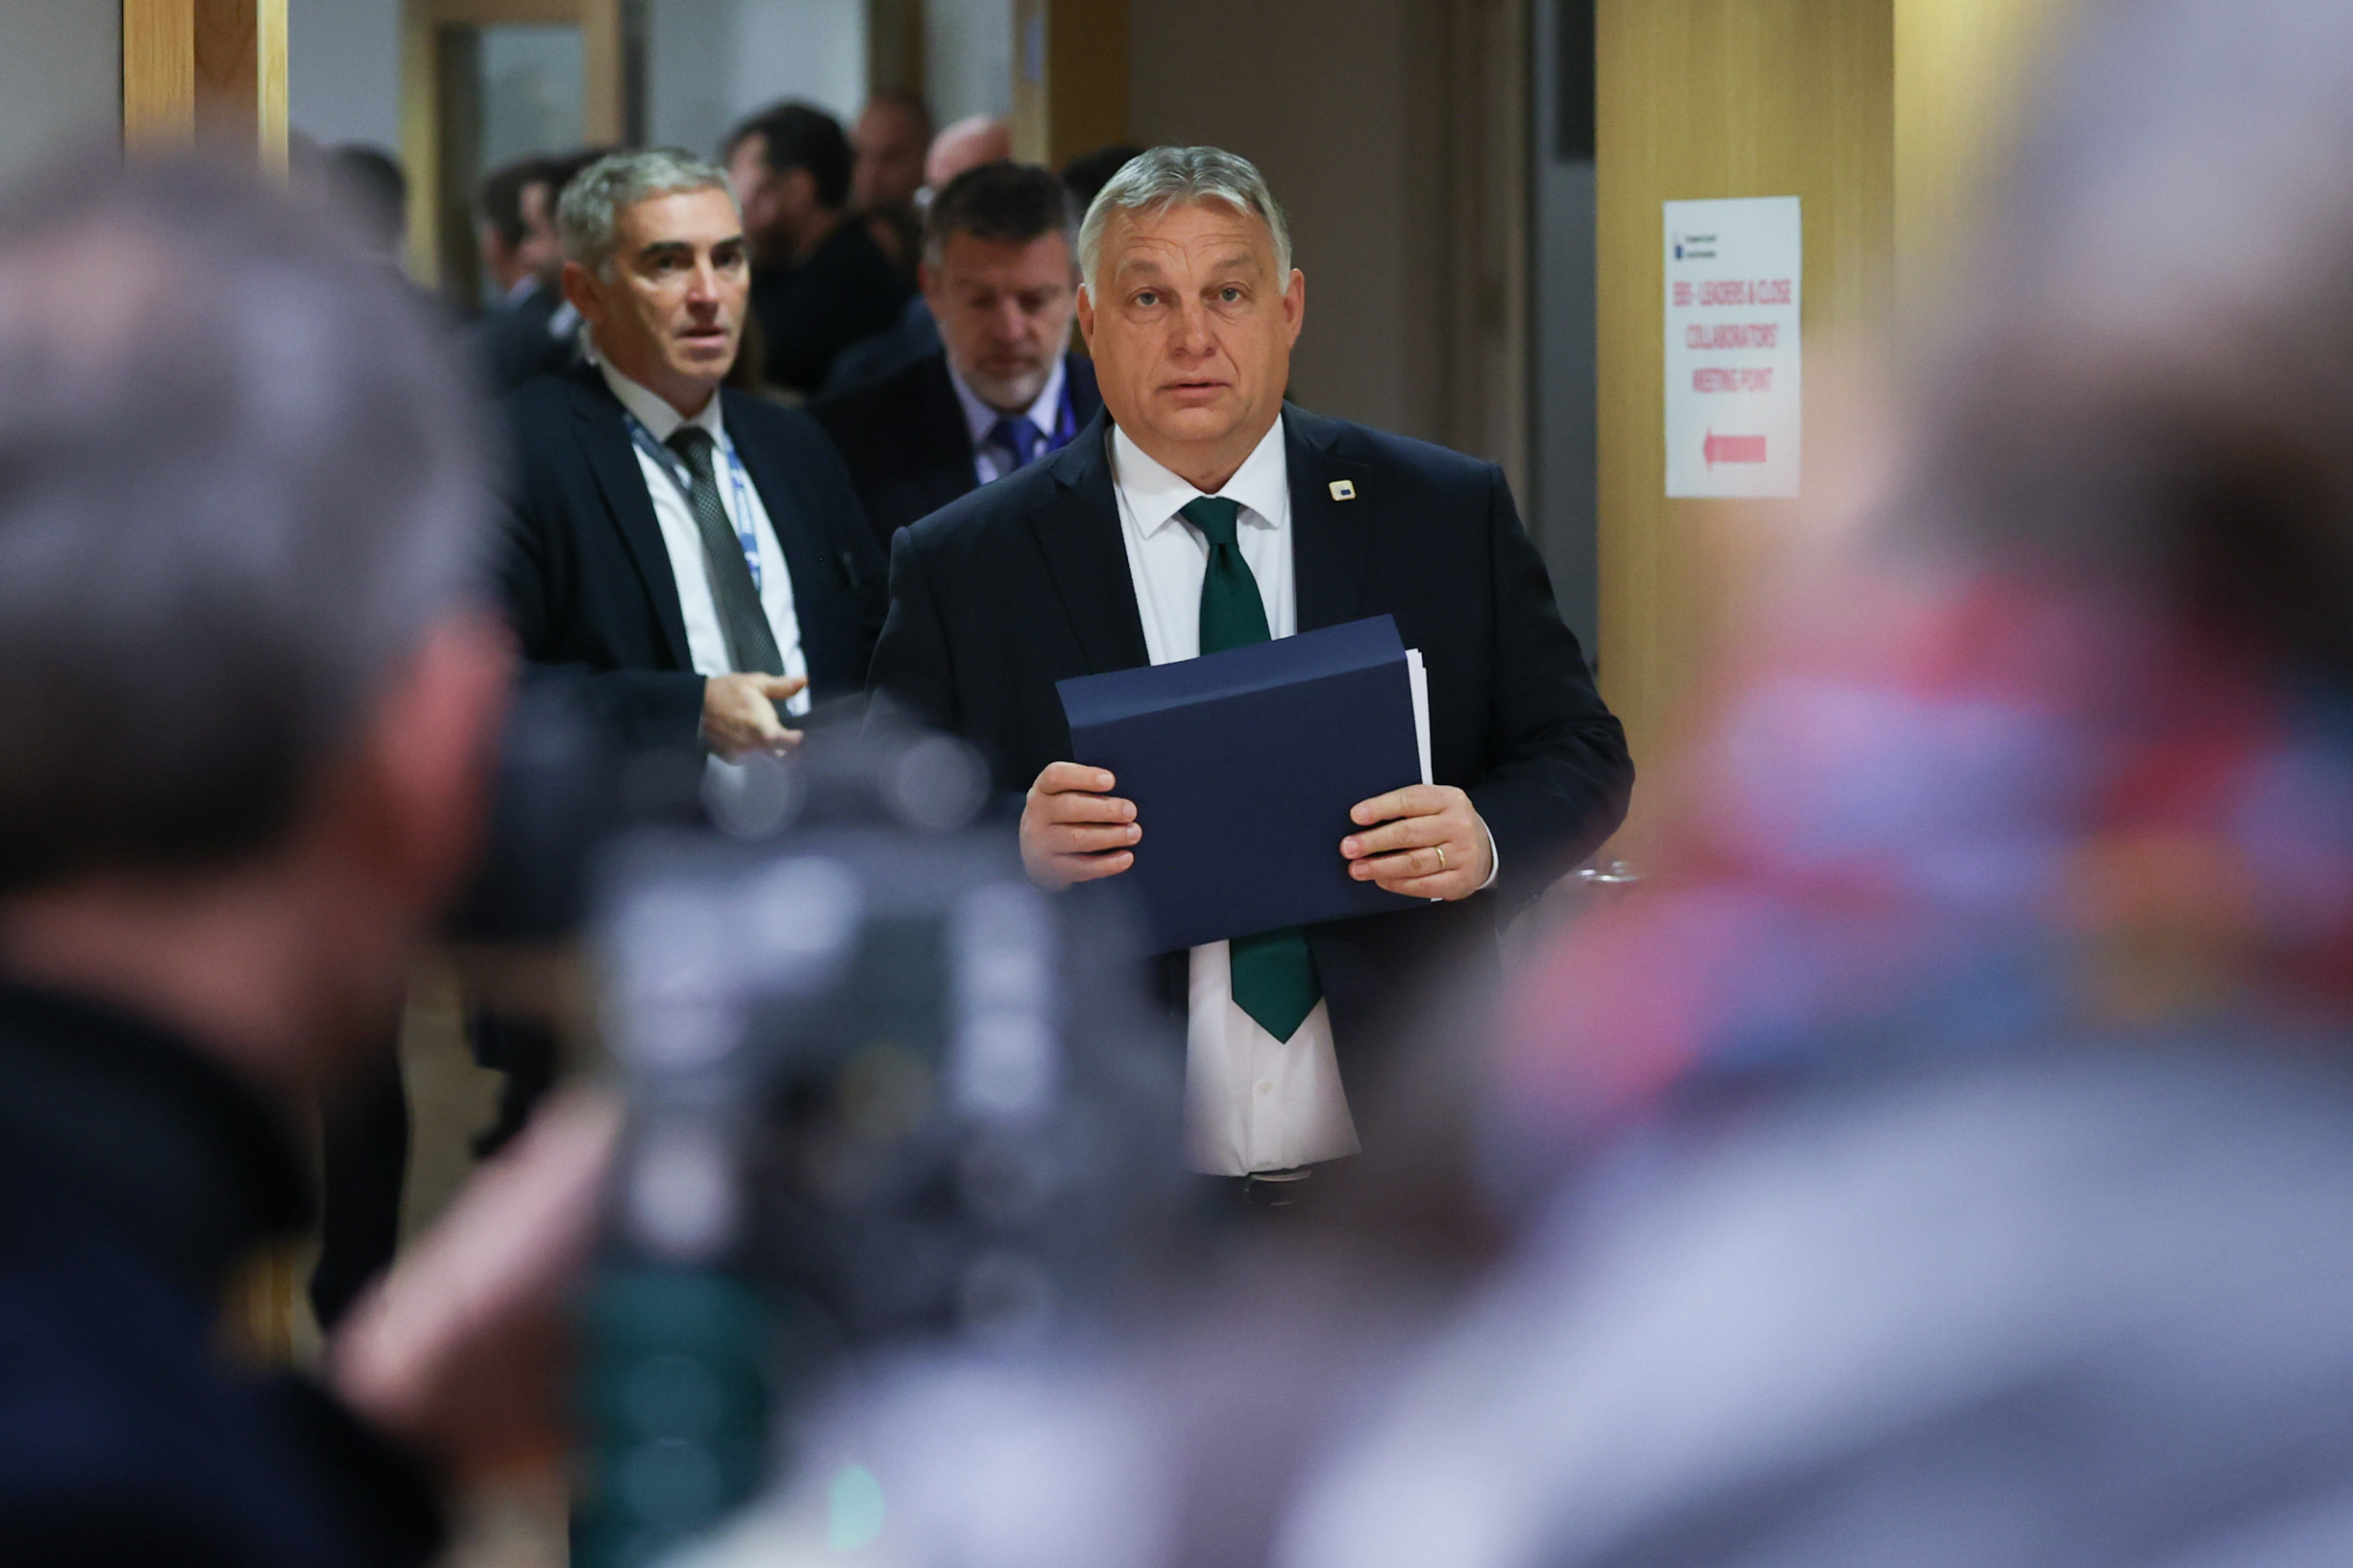 Řekl Orbán, že je proti členství v EU a Ukrajina je země nikoho? Spor o slova na uzavřeném jednání